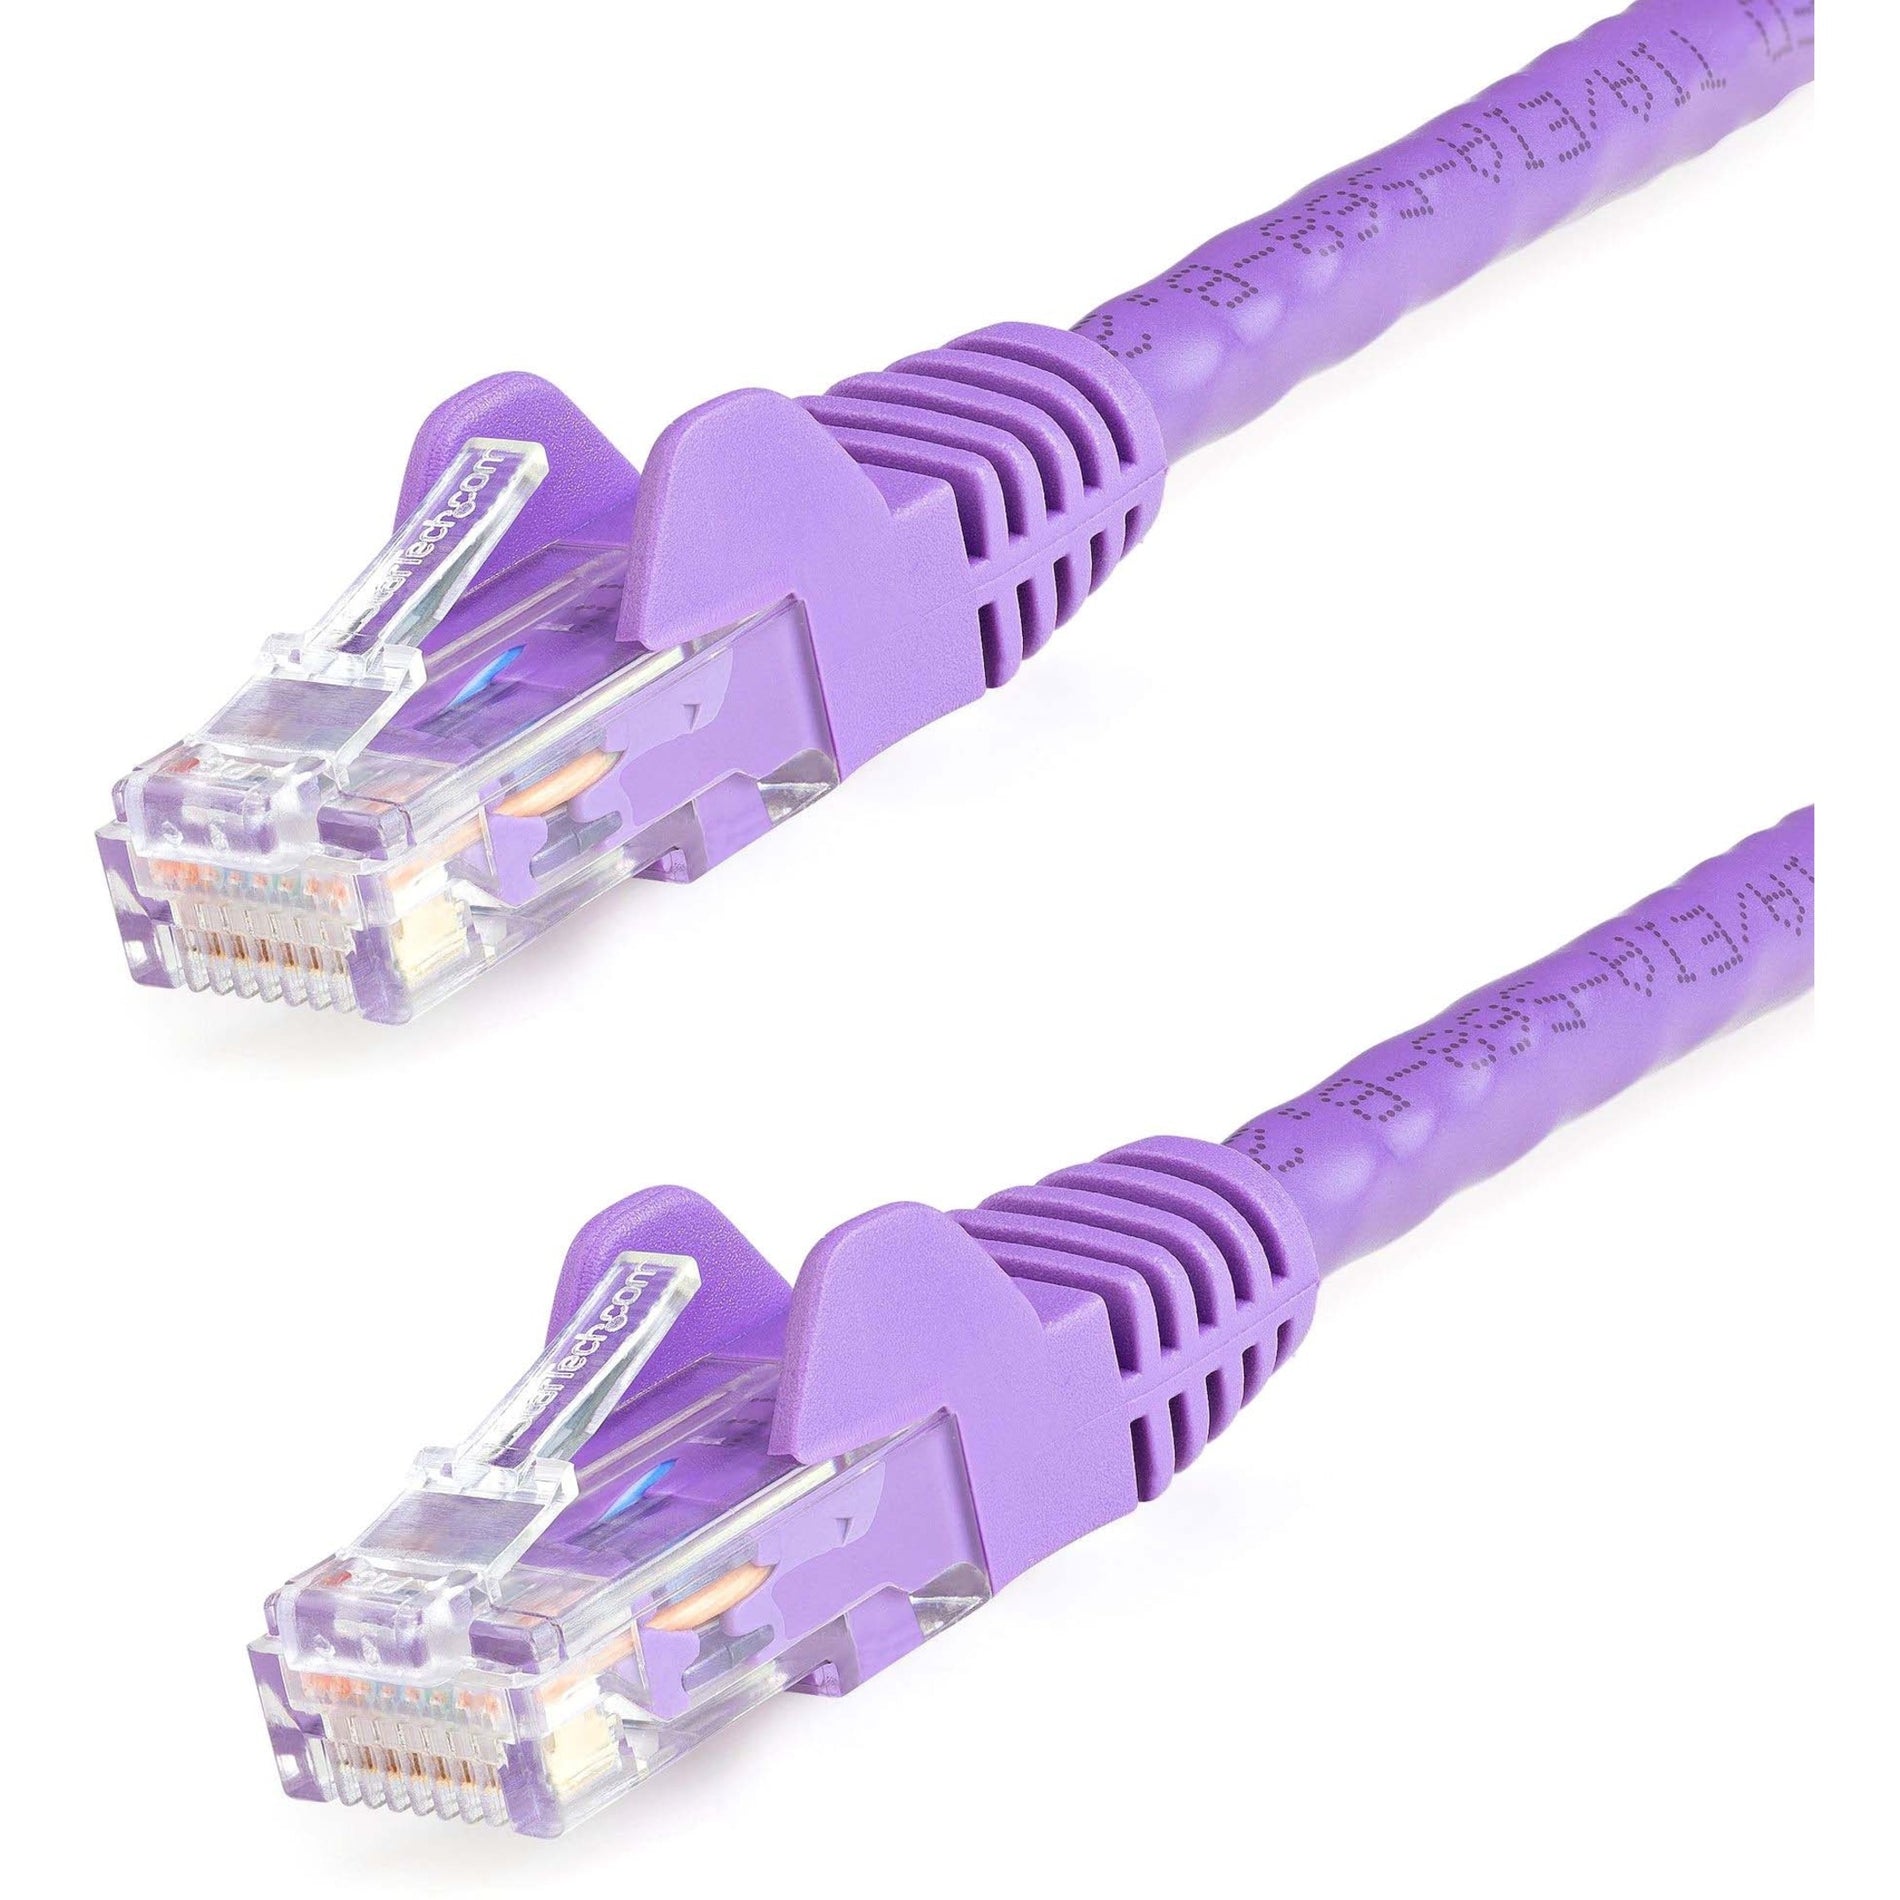 StarTech.com N6PATCH4PL Cat6 Patch Cable, 4ft Purple Ethernet Cable, Snagless RJ45 Connectors